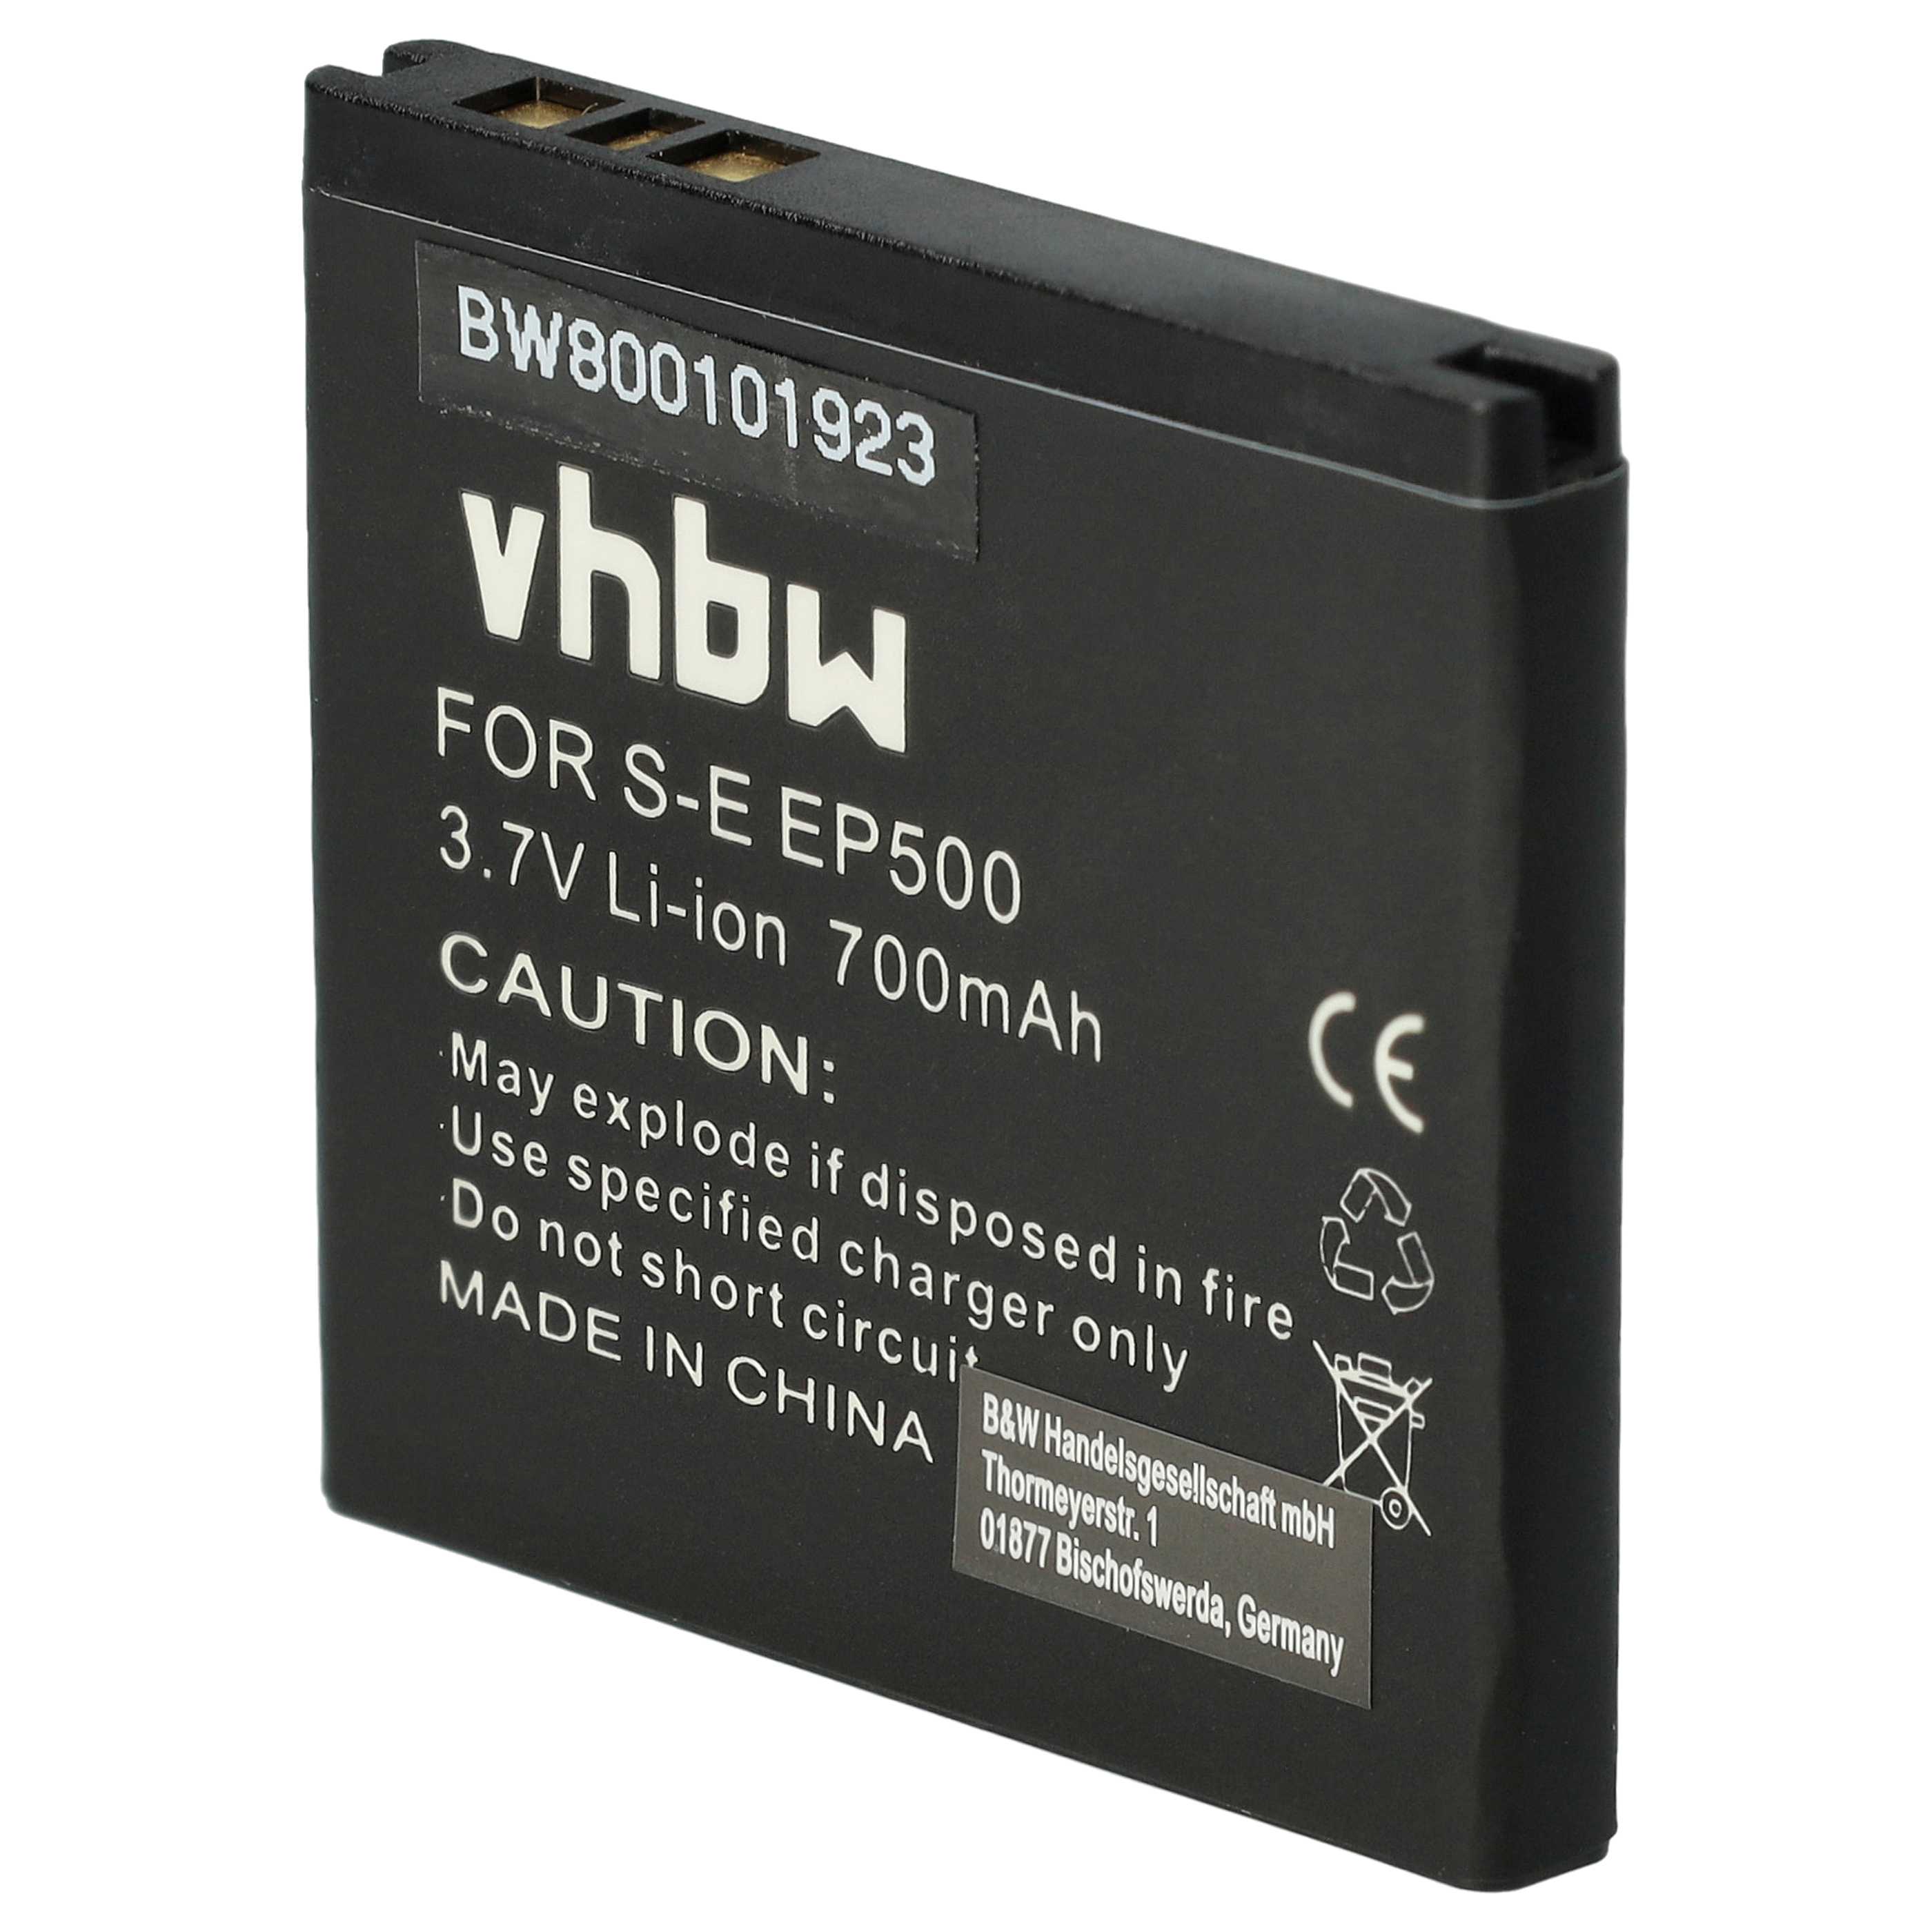 Batterie remplace Sony-Ericsson EP500 pour téléphone portable - 700mAh, 3,7V, Li-ion